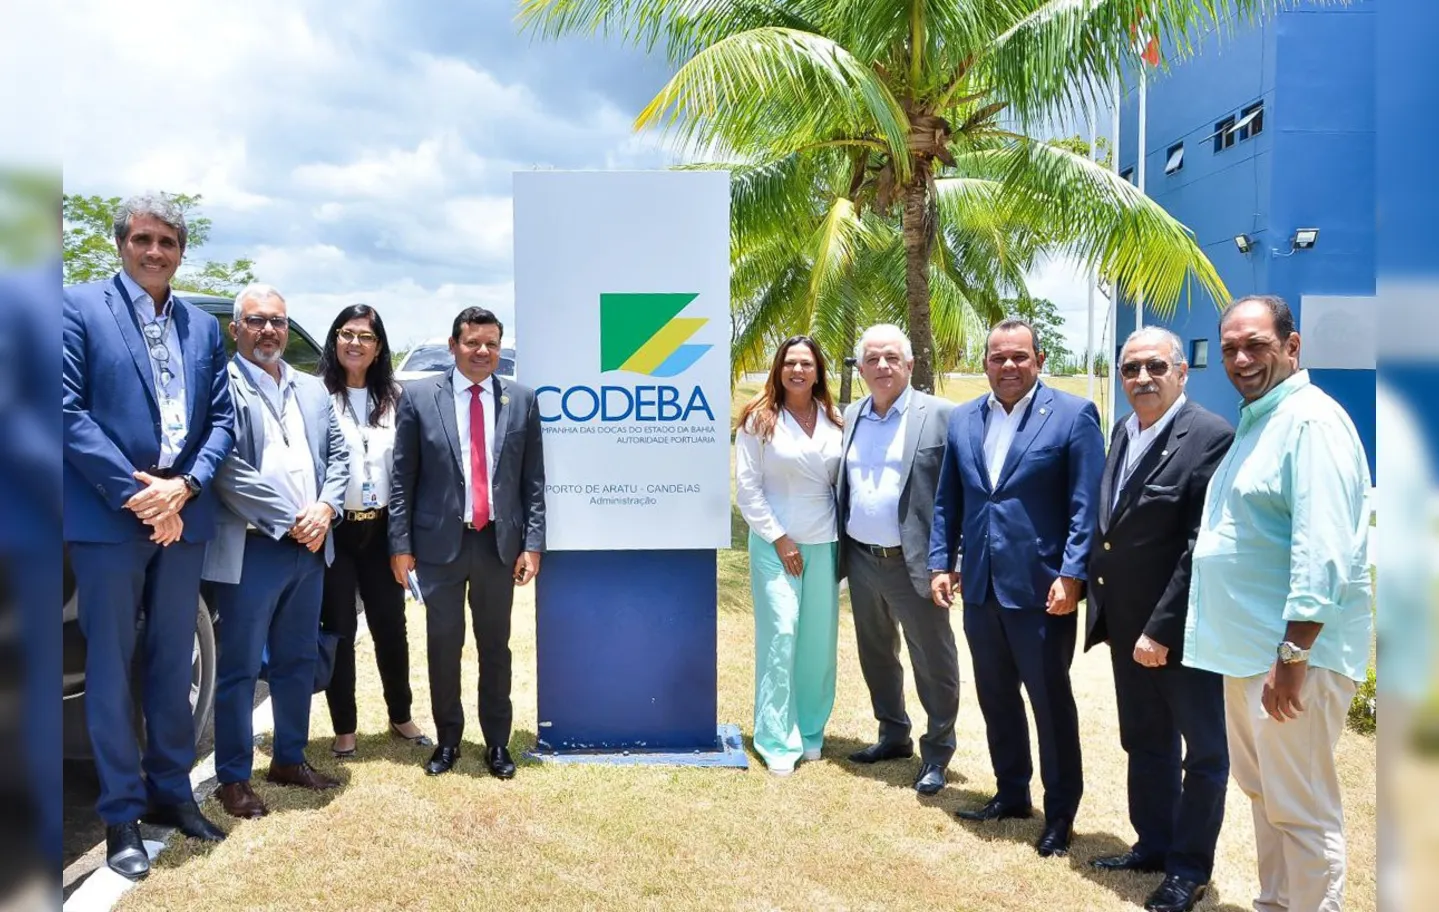 Contrato foi assinado com a presença do ministro de Portos e Aeroportos e do vice-governador da Bahia